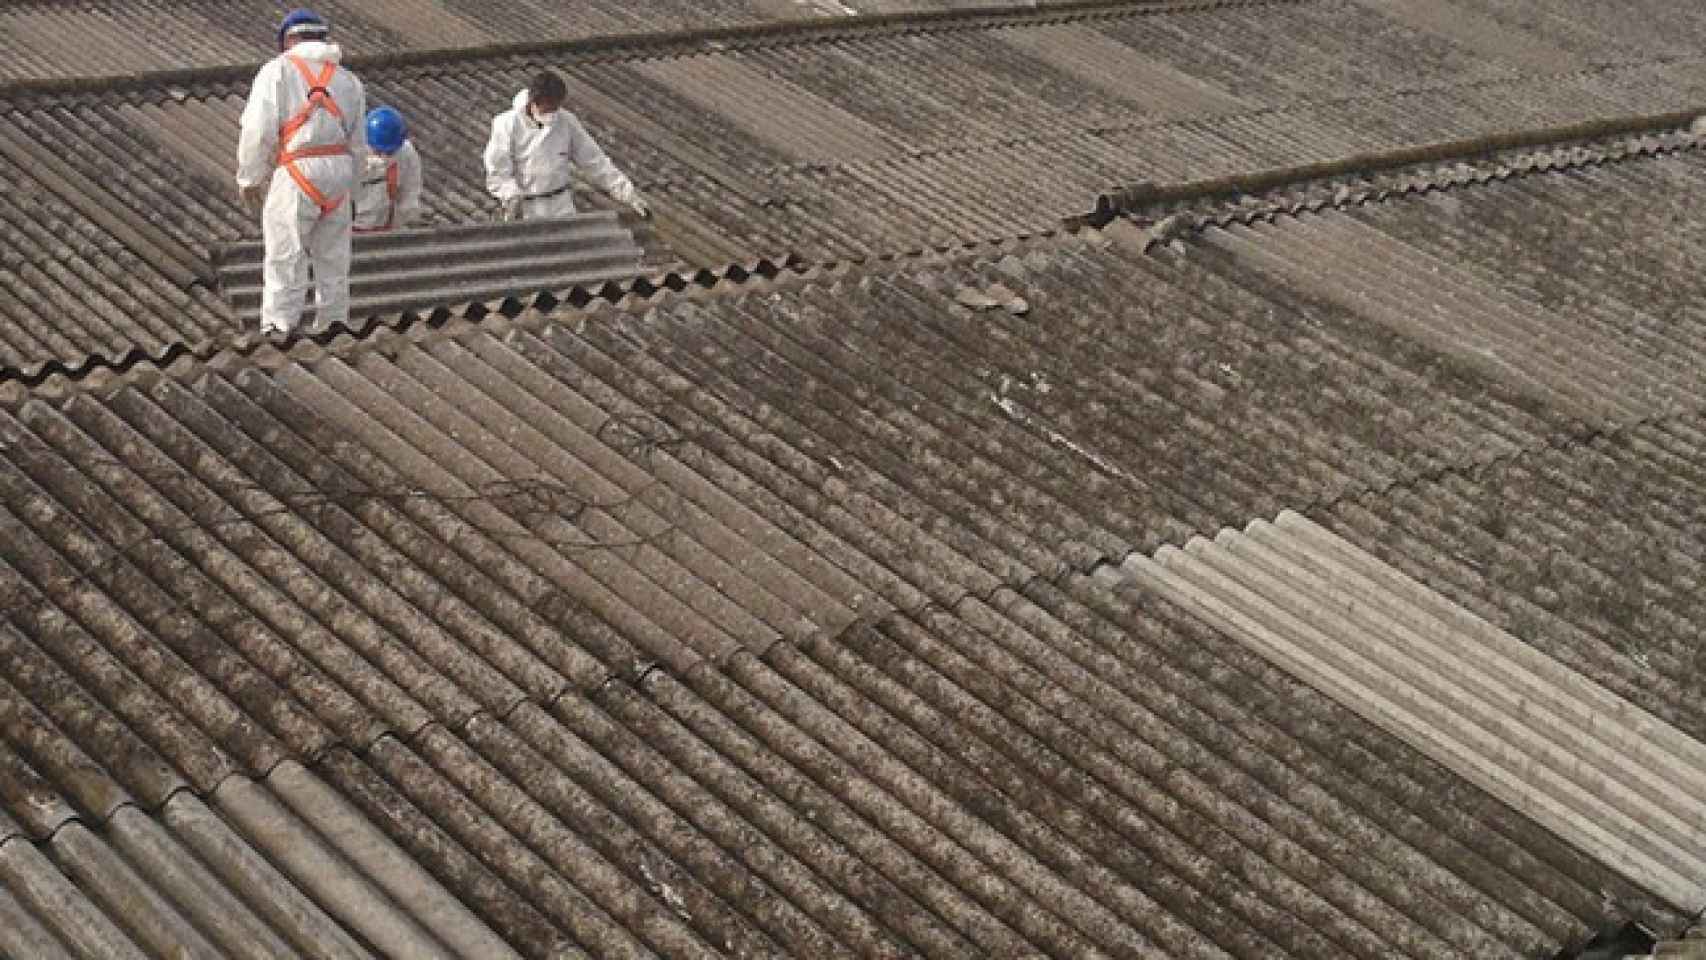 Desde 2002, en España está prohibido el uso de amianto, que solía usarse para techados. En la imagen, dos operarios retirando un tejado de uralita